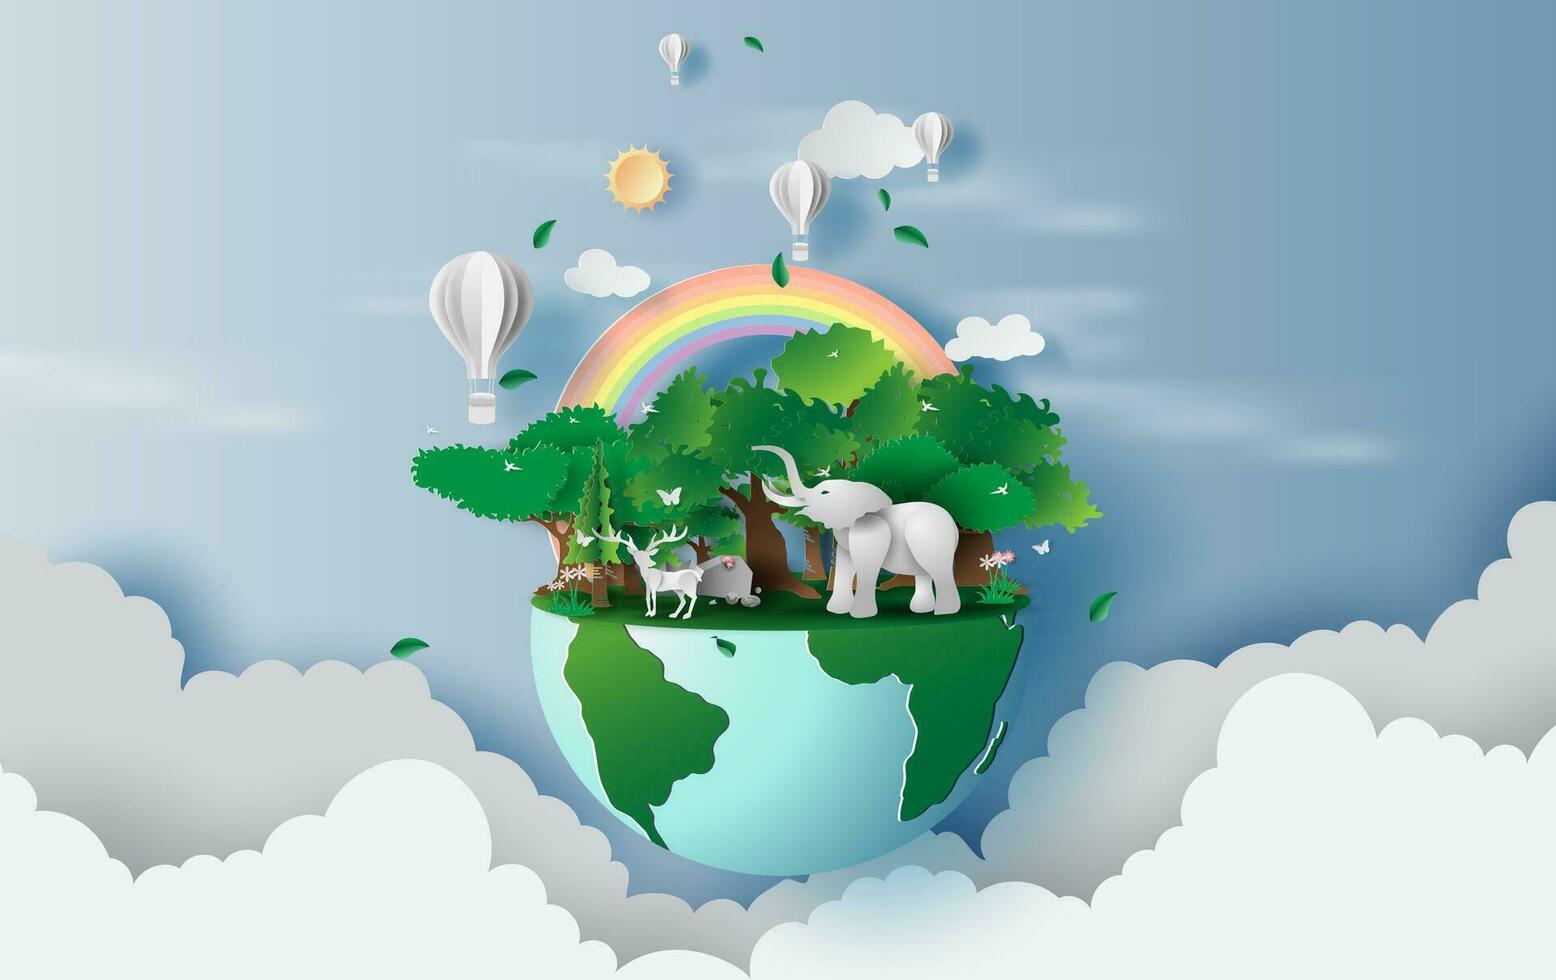 illustration av ren i grön skog, kreativ värld miljö och jord dag koncept.landskap vilda djur och växter med elefant i grön natur växt förbi område runt om ballonger på himmel. papper skära ,craft.vector vektor